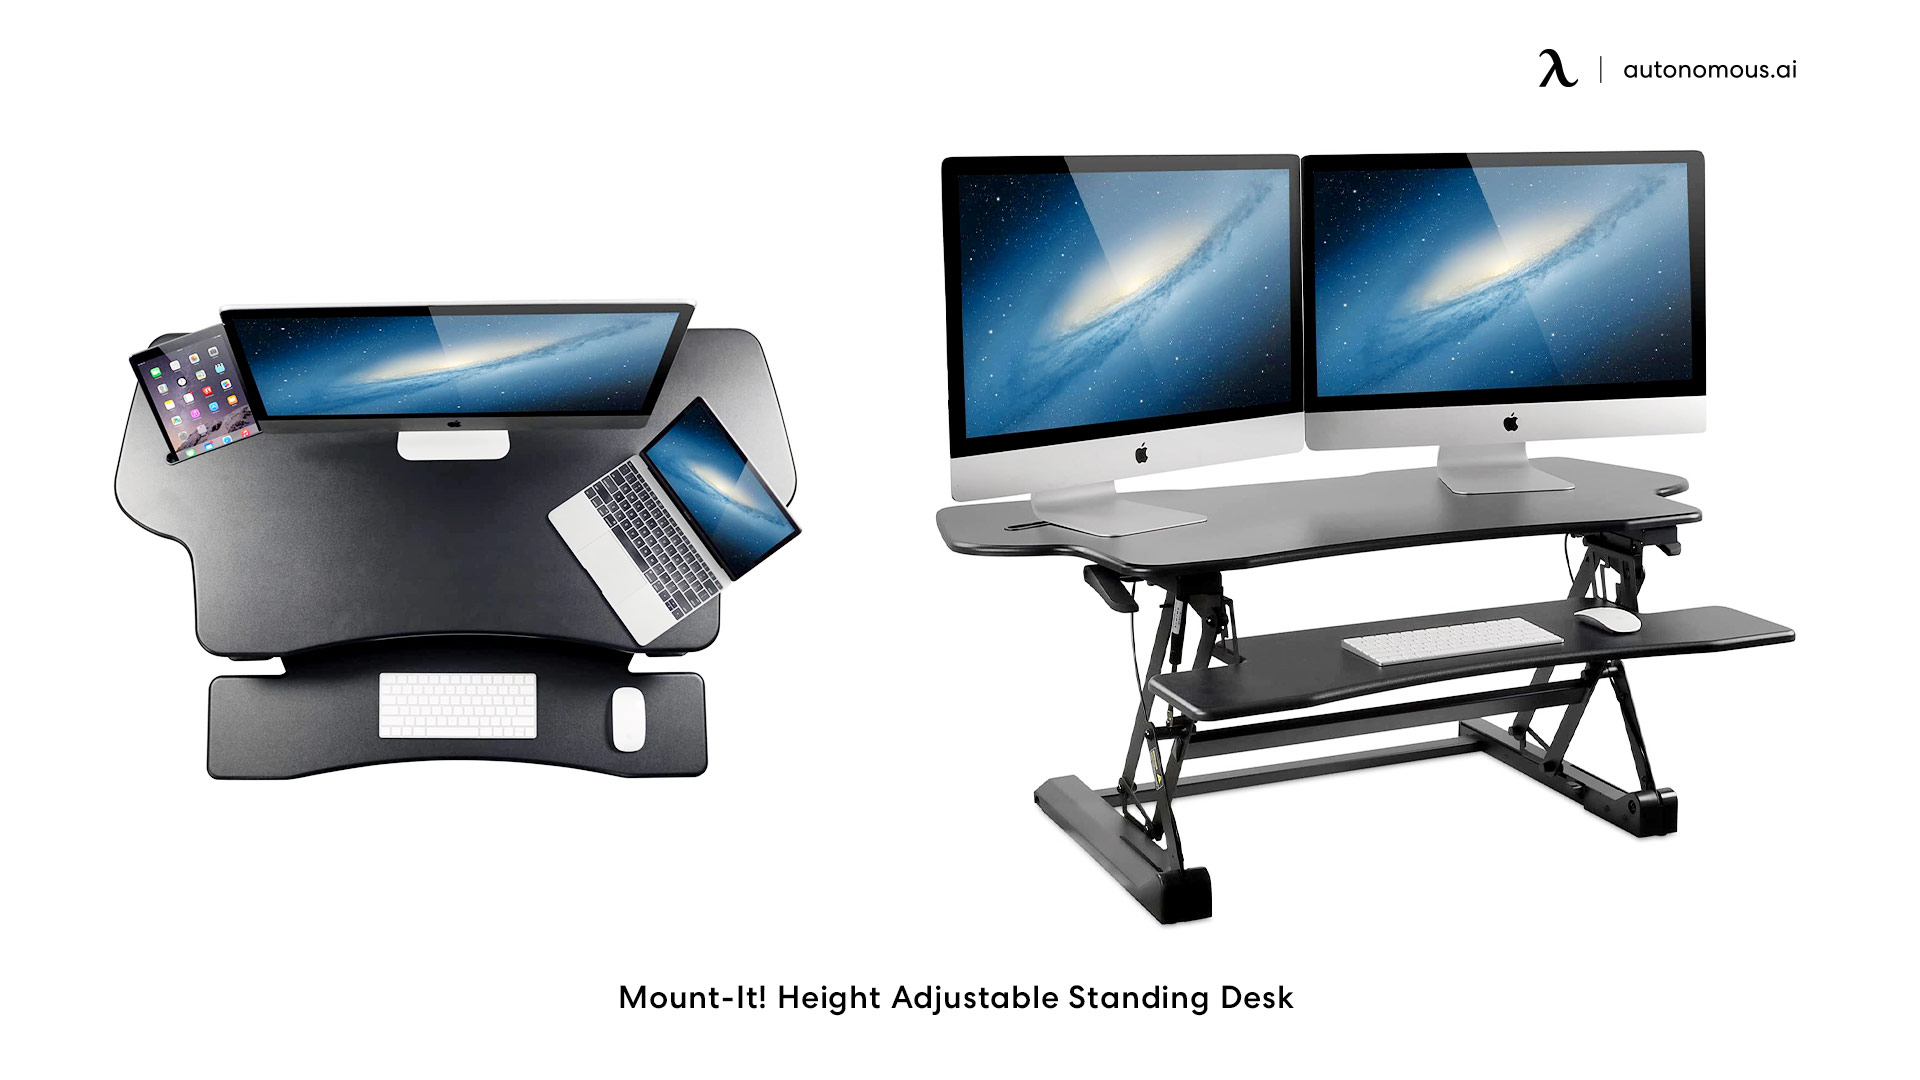 Mount-It! Height Adjustable Standing Desk